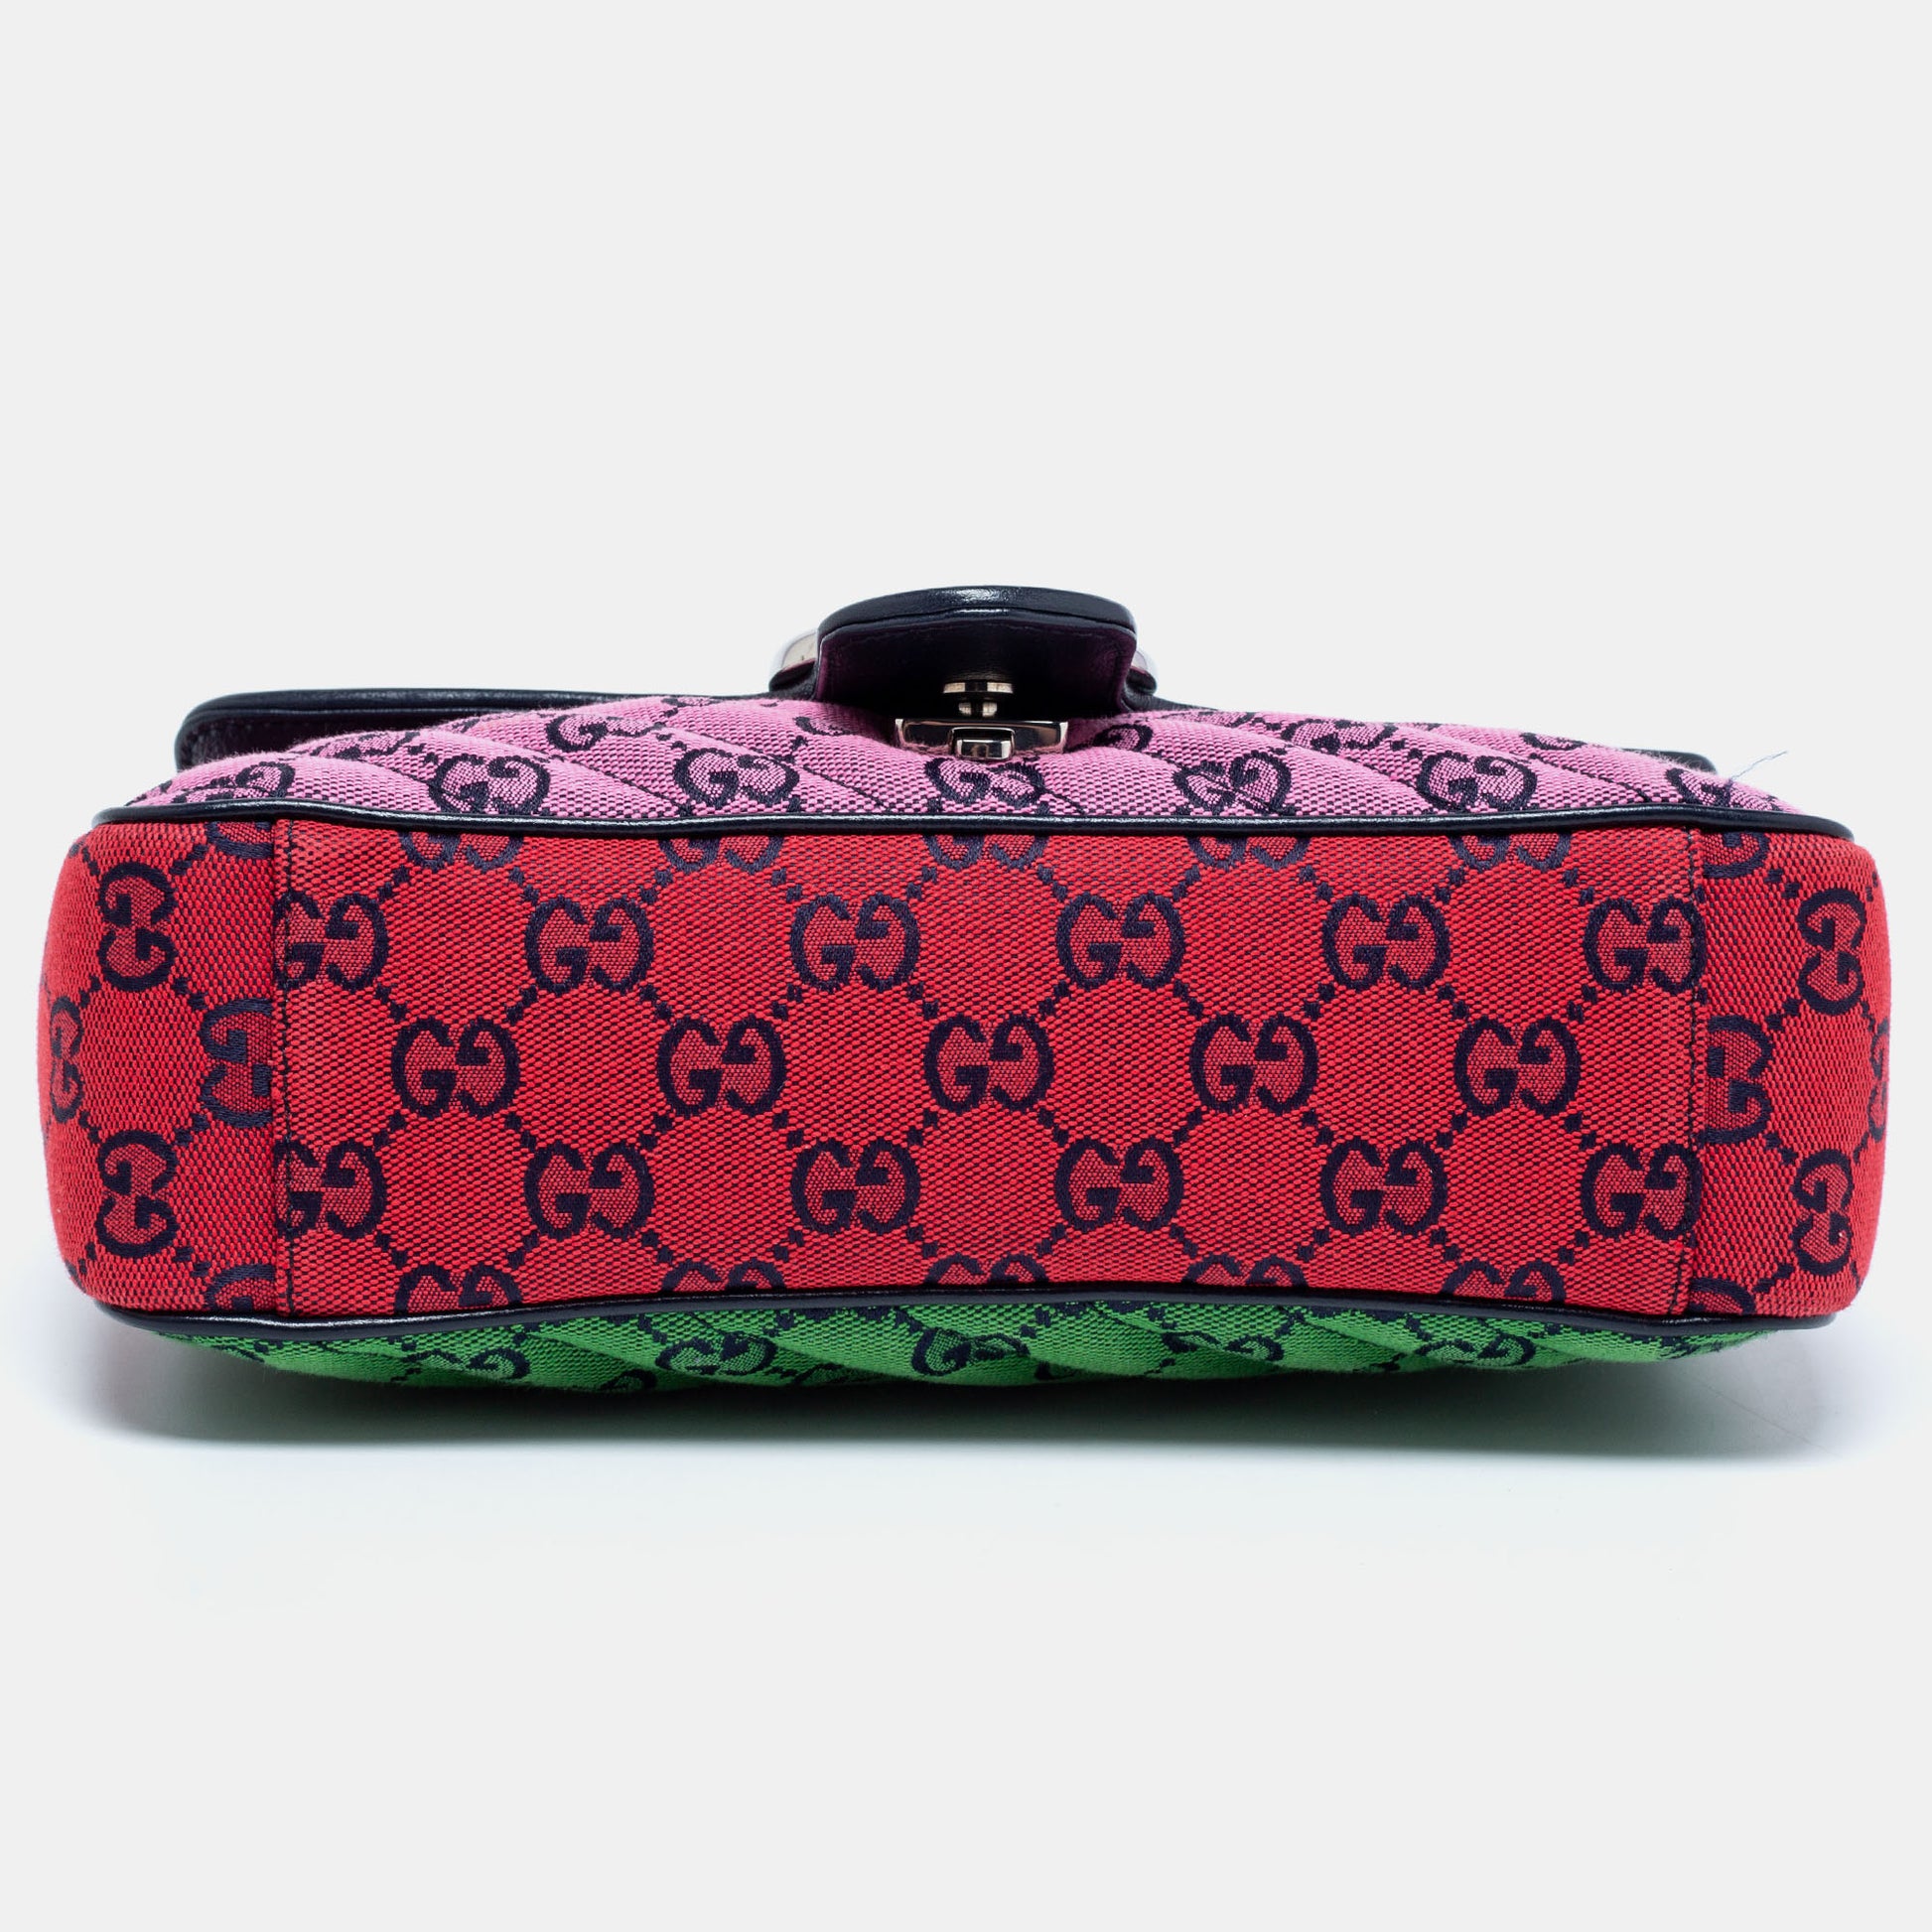 Gg marmont round cloth crossbody bag Gucci Multicolour in Cloth - 24974448